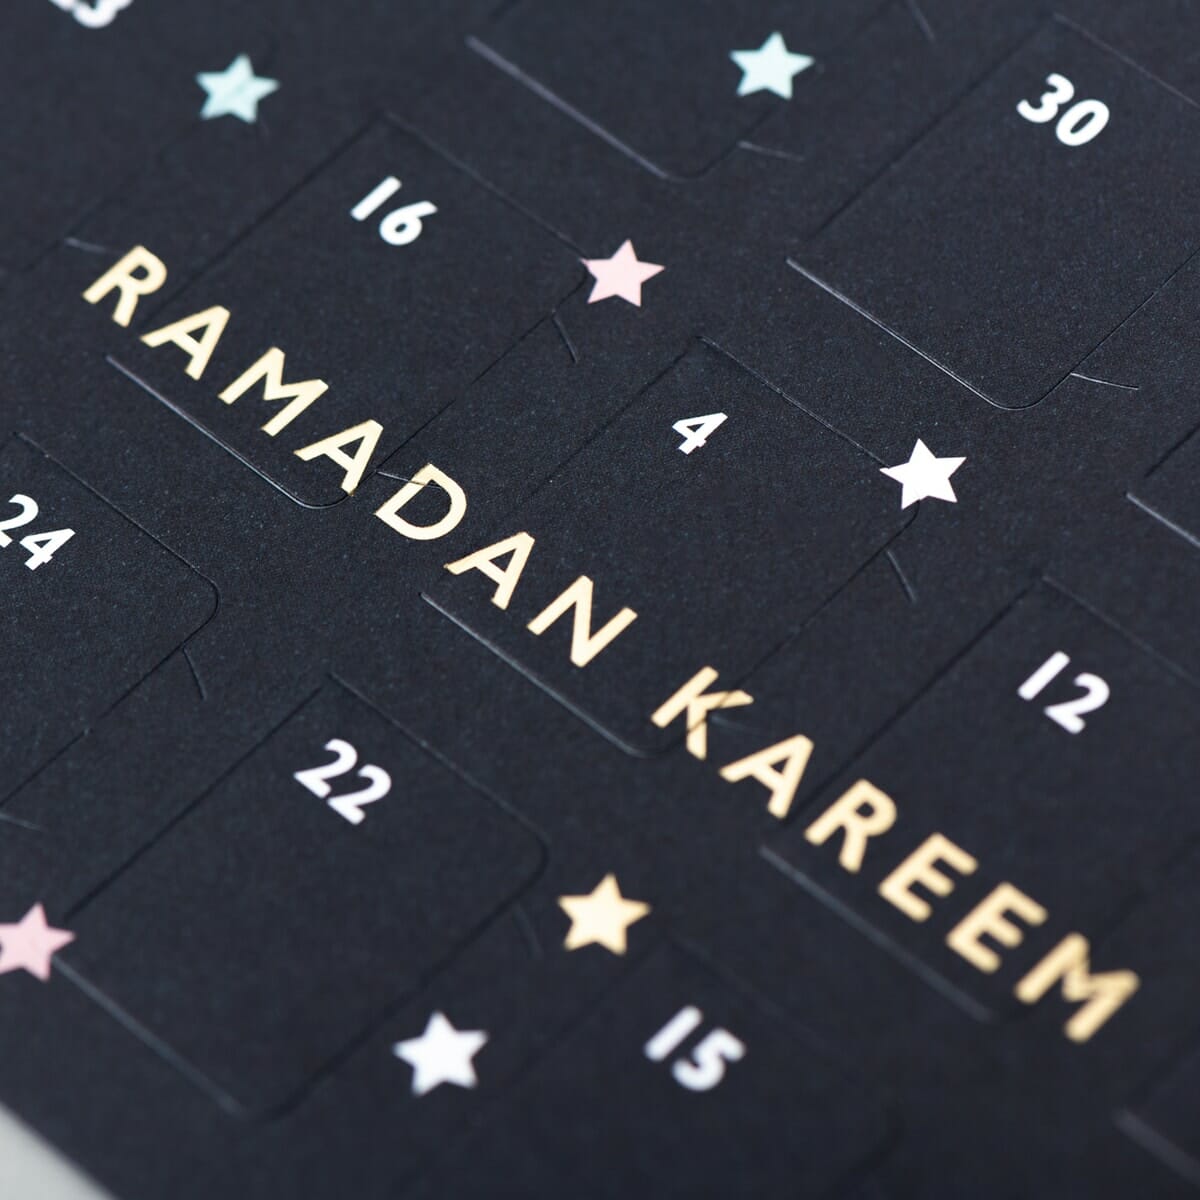 ramadan good deed calendars night sky design up close